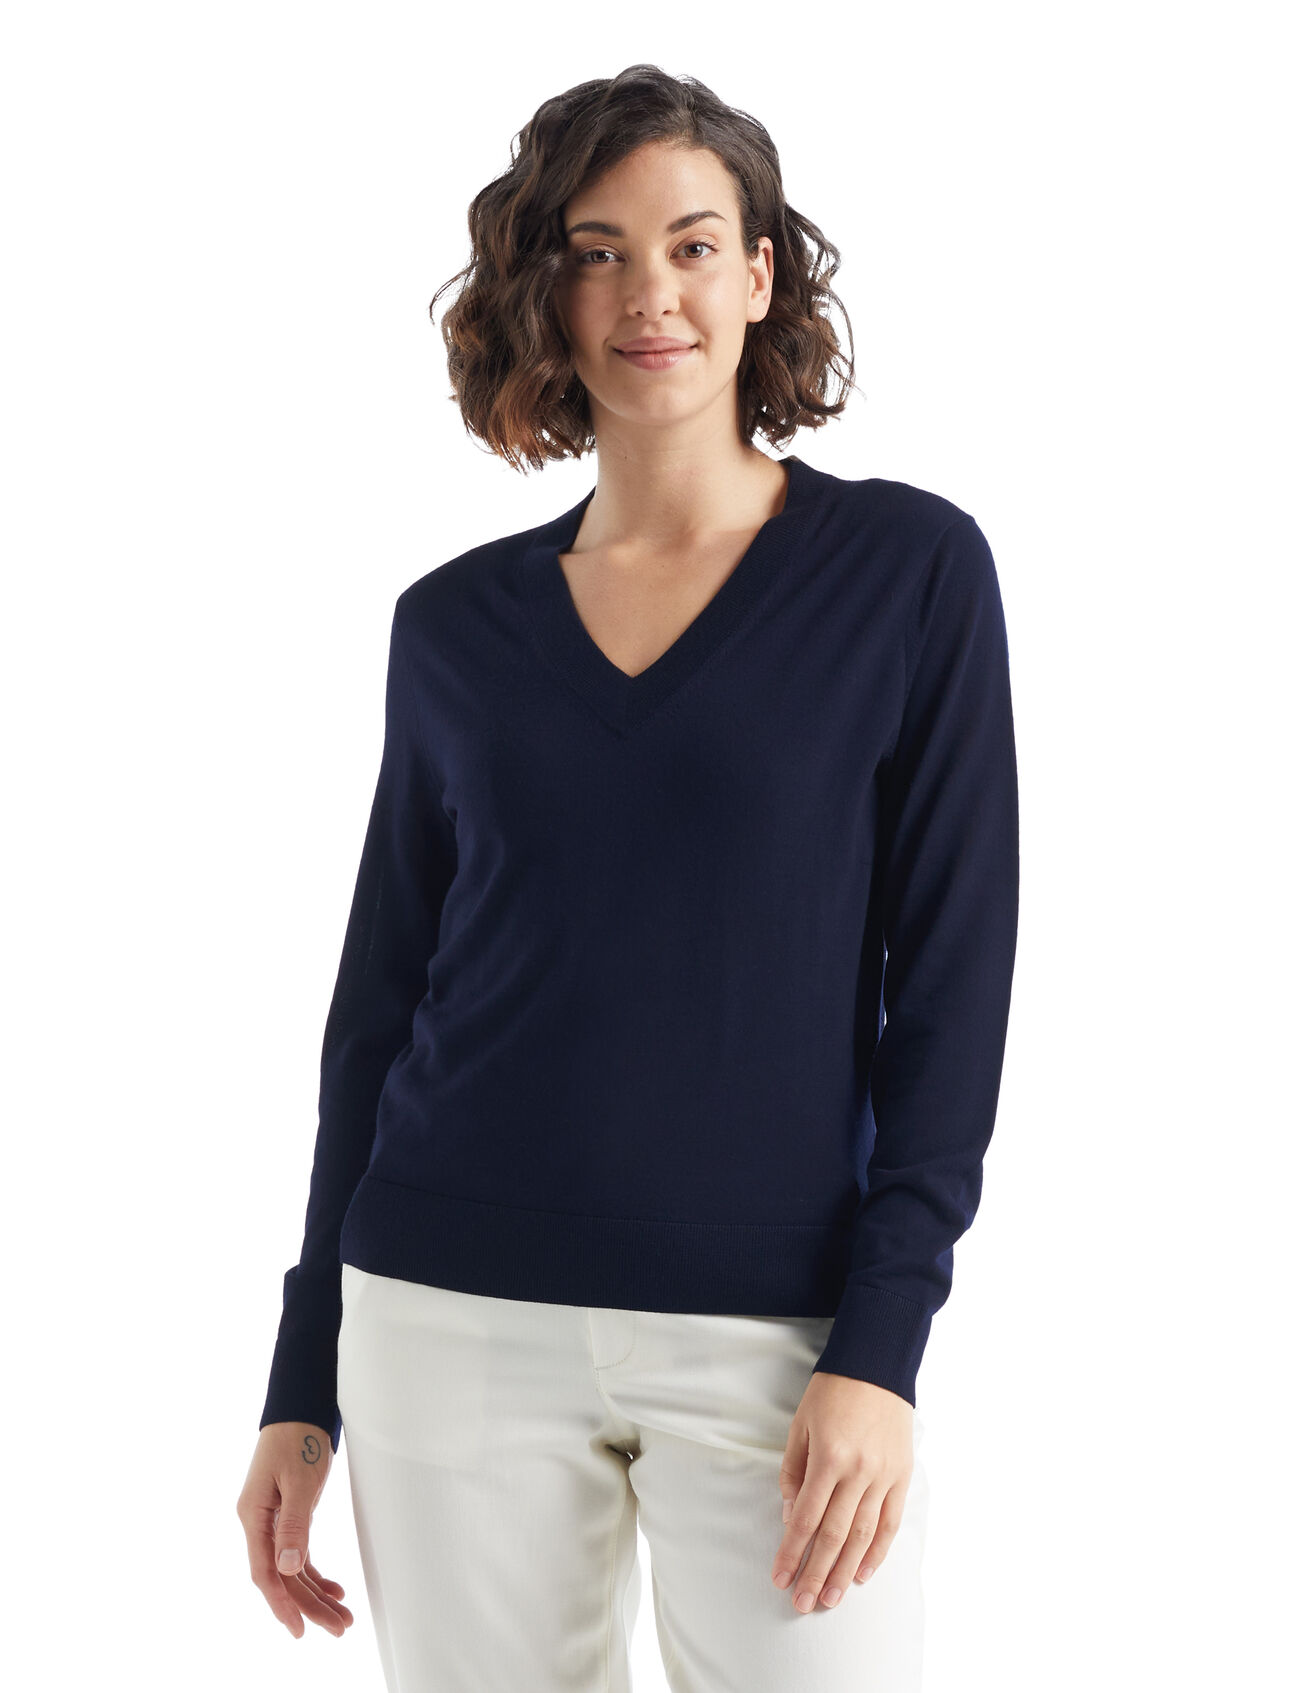 Merino Wilcox Sweater  Damen Ein klassischer Pullover für jeden Tag aus feinster Merinowolle, der Wilcox Sweater mit V-Ausschnitt verwöhnt mit einem unvergleichlich weichen Tragegefühl und ist der perfekte Begleiter an Tagen, an denen du einen zusätzlichen leichten Layer brauchst.